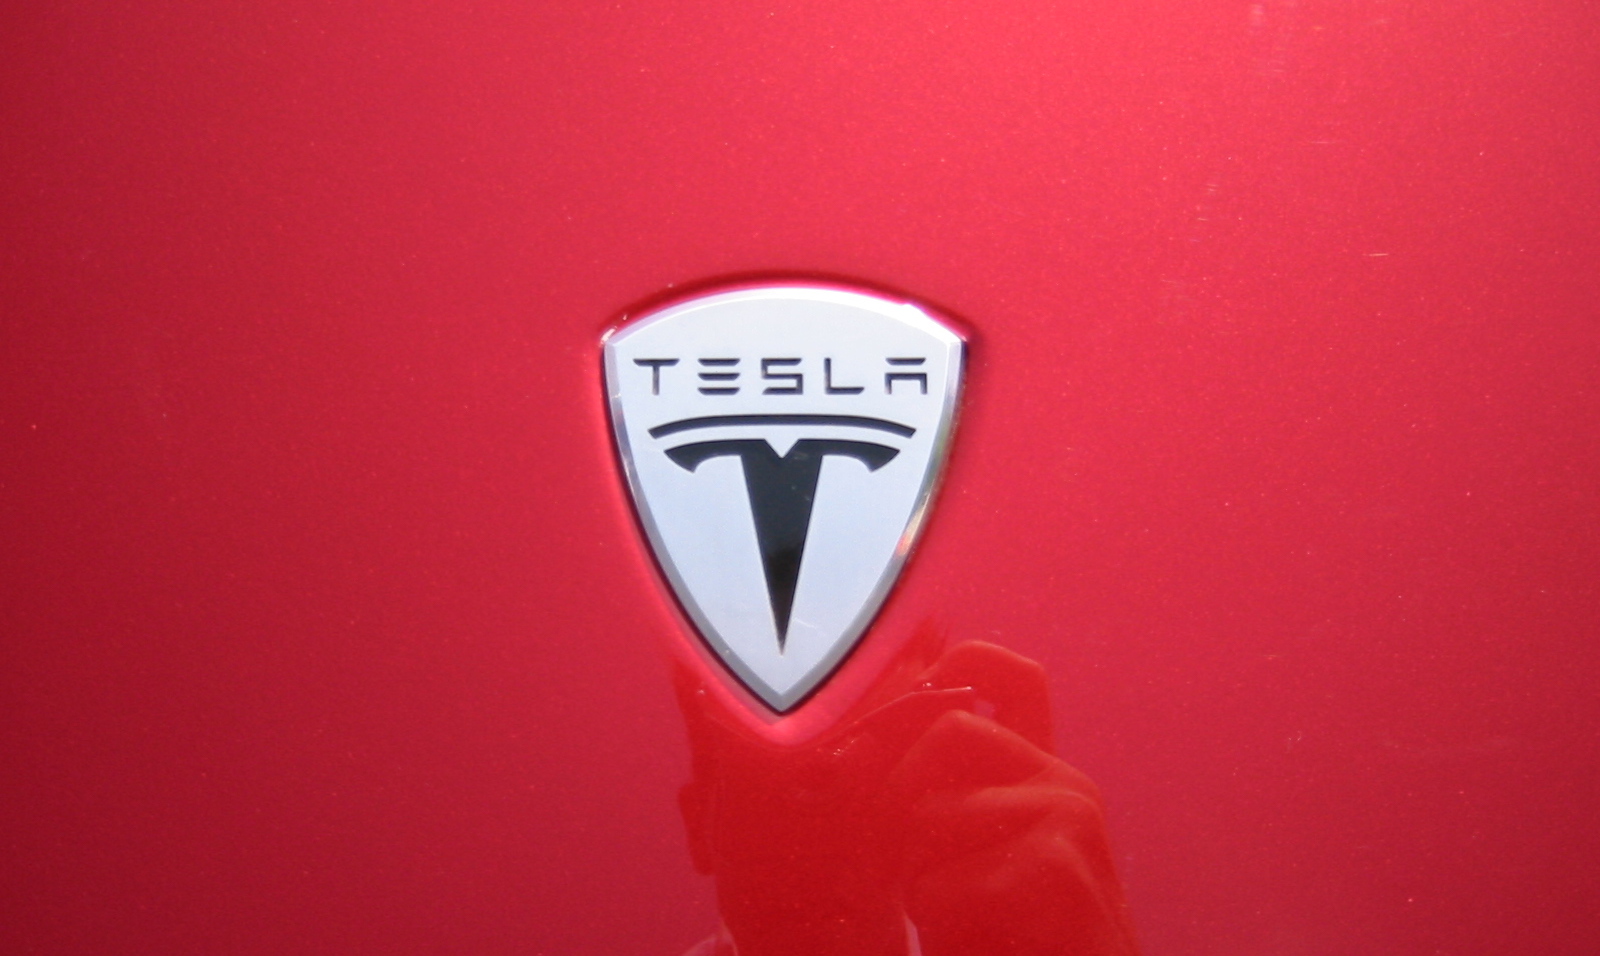 Краткая история Tesla — автомобильной компании будущего